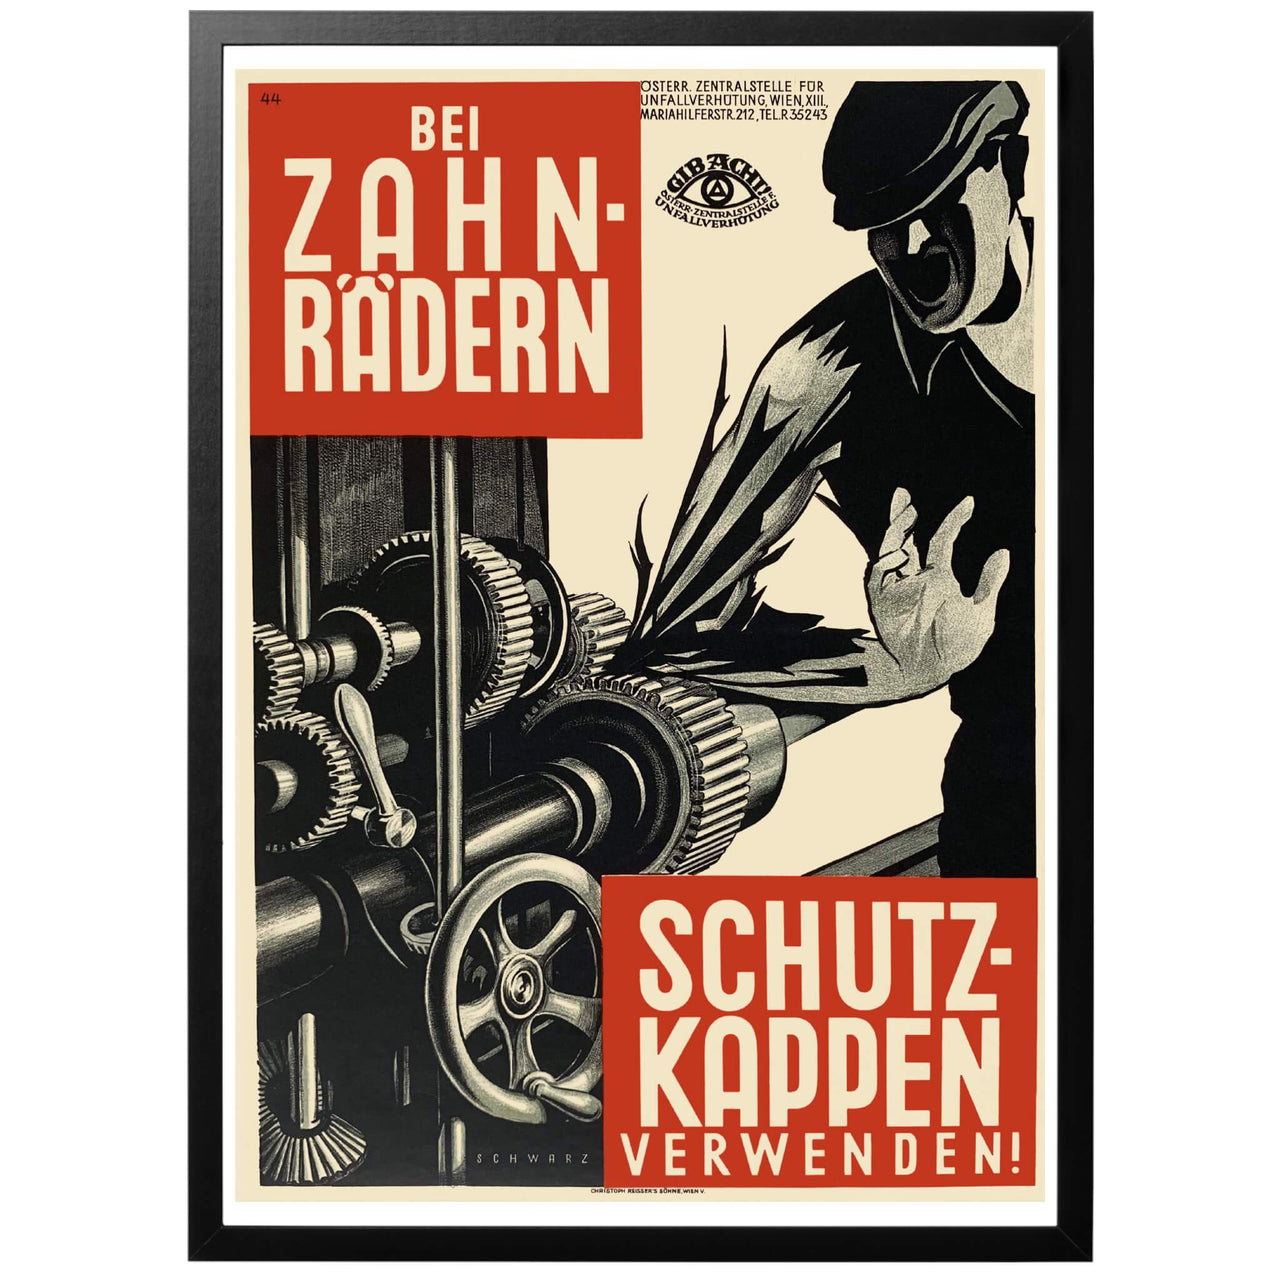 En uppmaning till industriarbetare och maskinister att använda skyddskläder vid arbete med växlar och kugghjul. Affischen är gavs ut av centralkontoret för förebyggande av olycksfall, Wien.  Tryckt av Cristoph Reisser's Söhne, Wien V. med största sannolikhet någon gång under 20-talet.